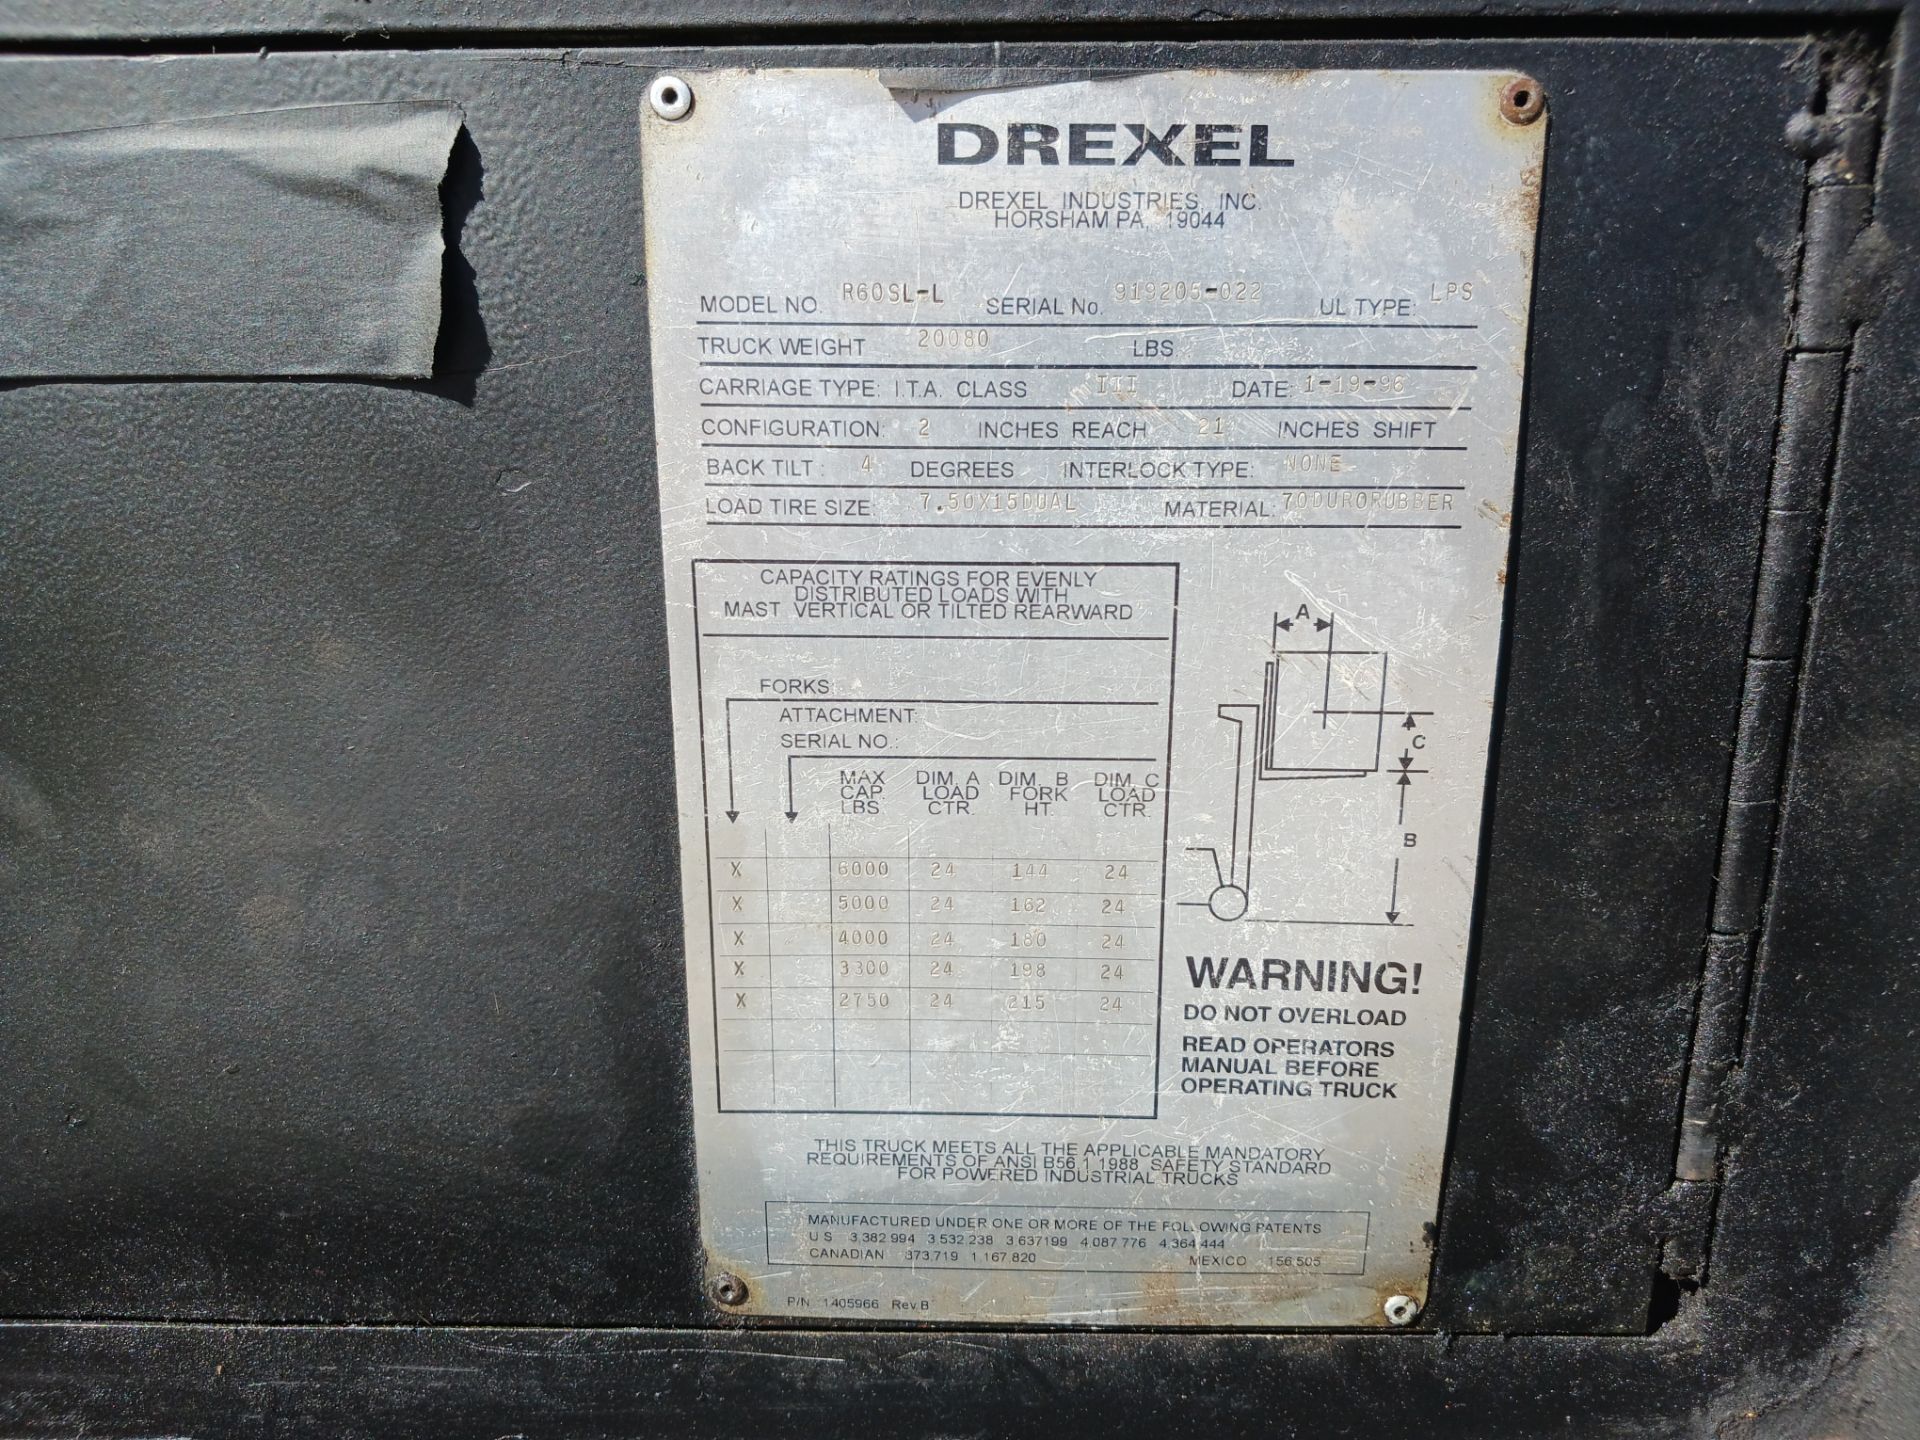 Drexel R60SL-L 6,000lb Swing Mast Forklift - Image 26 of 26